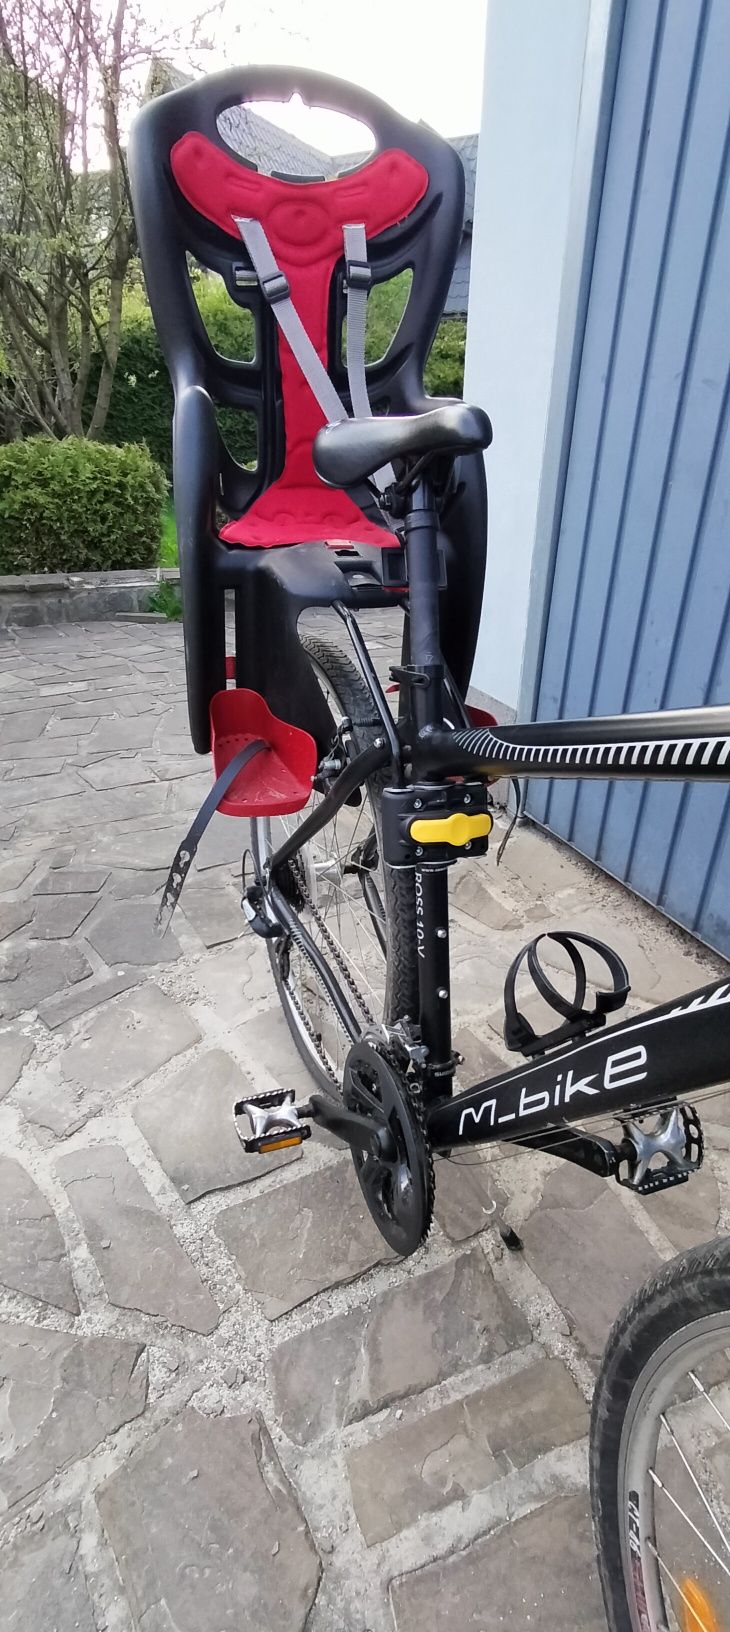 Rower m-bike plus krzesełko dla dziecka